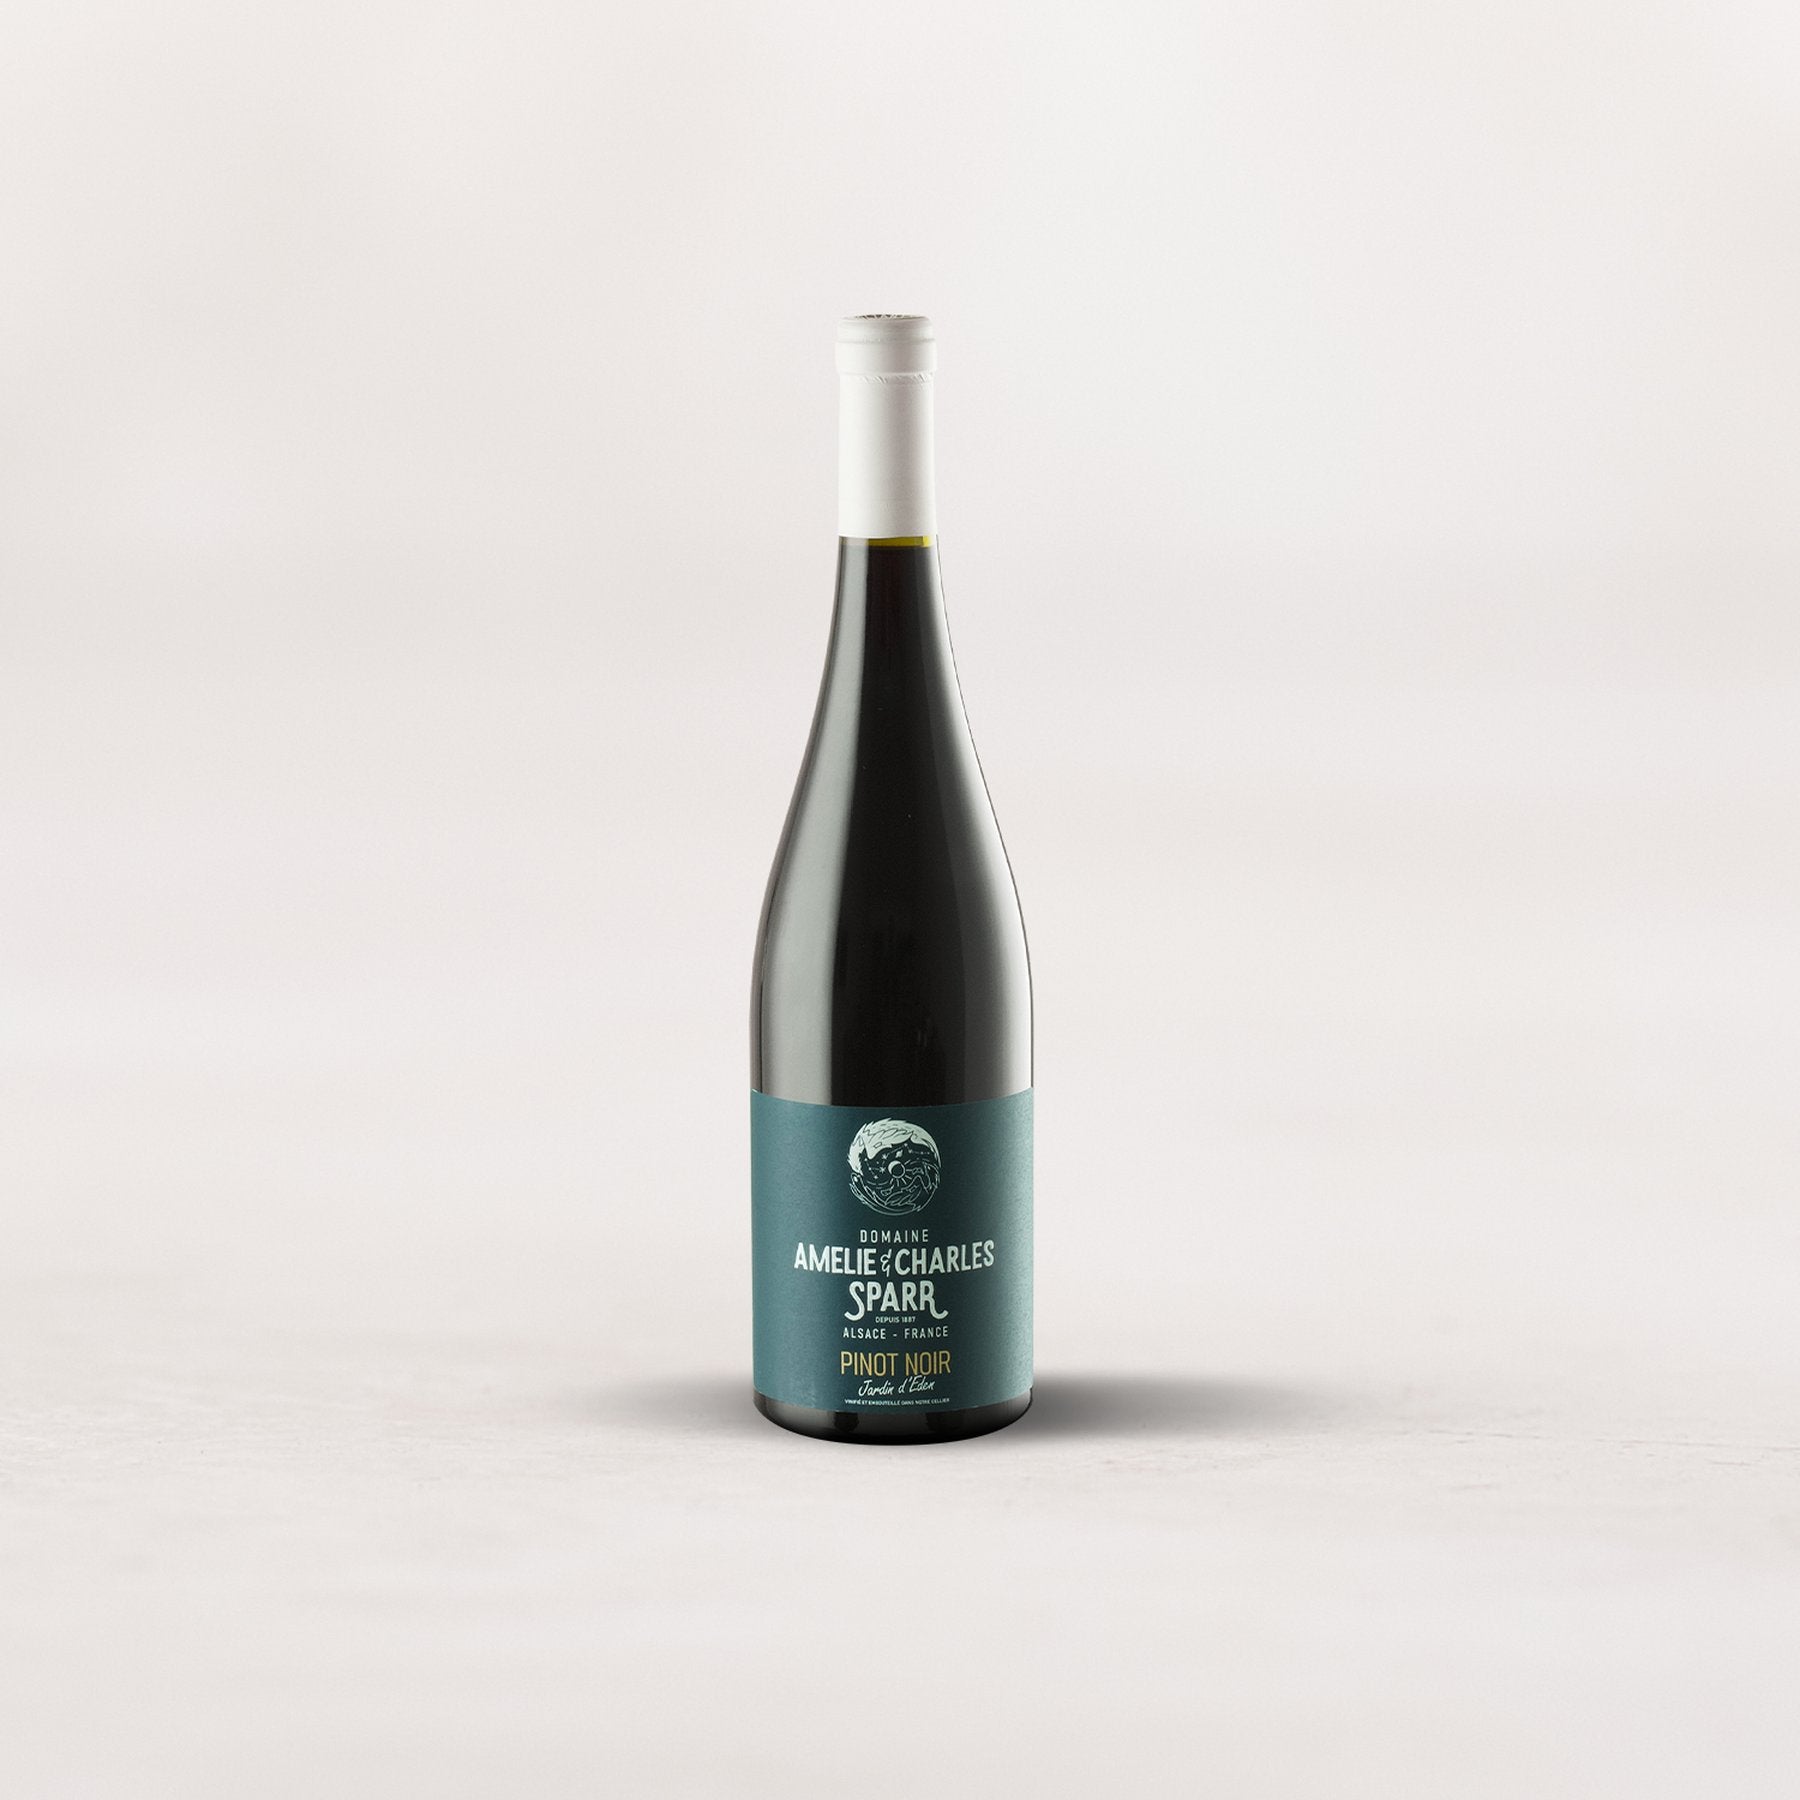 Domaine Amelie & Charles Sparr, Pinot Noir “Jardin d'Eden”